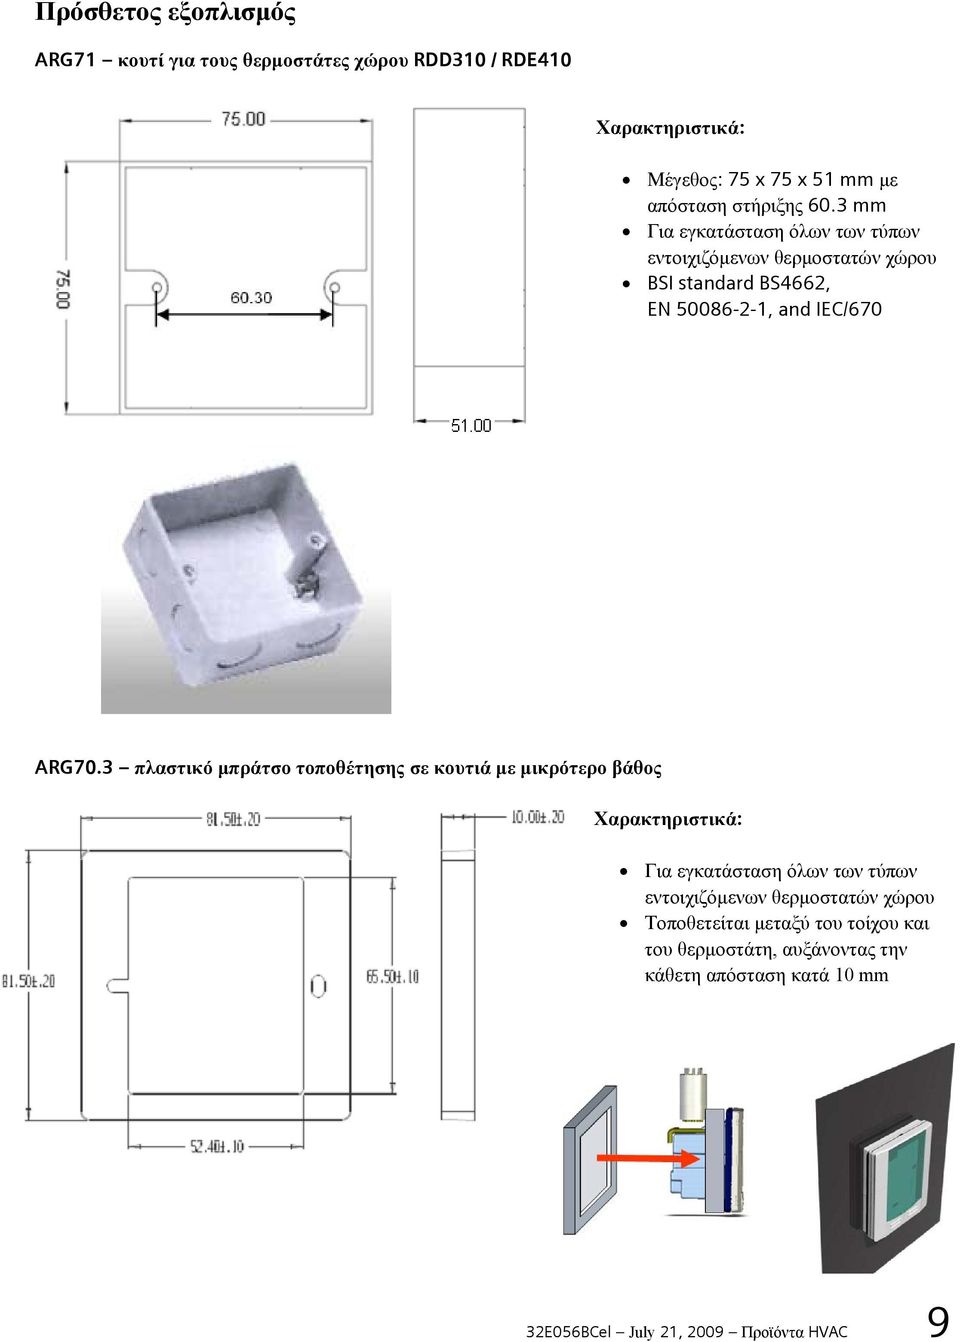 3 πλαστικό μπράτσο τοποθέτησης σε κουτιά με μικρότερο βάθος Χαρακτηριστικά: Για εγκατάσταση όλων των τύπων εντοιχιζόμενων θερμοστατών